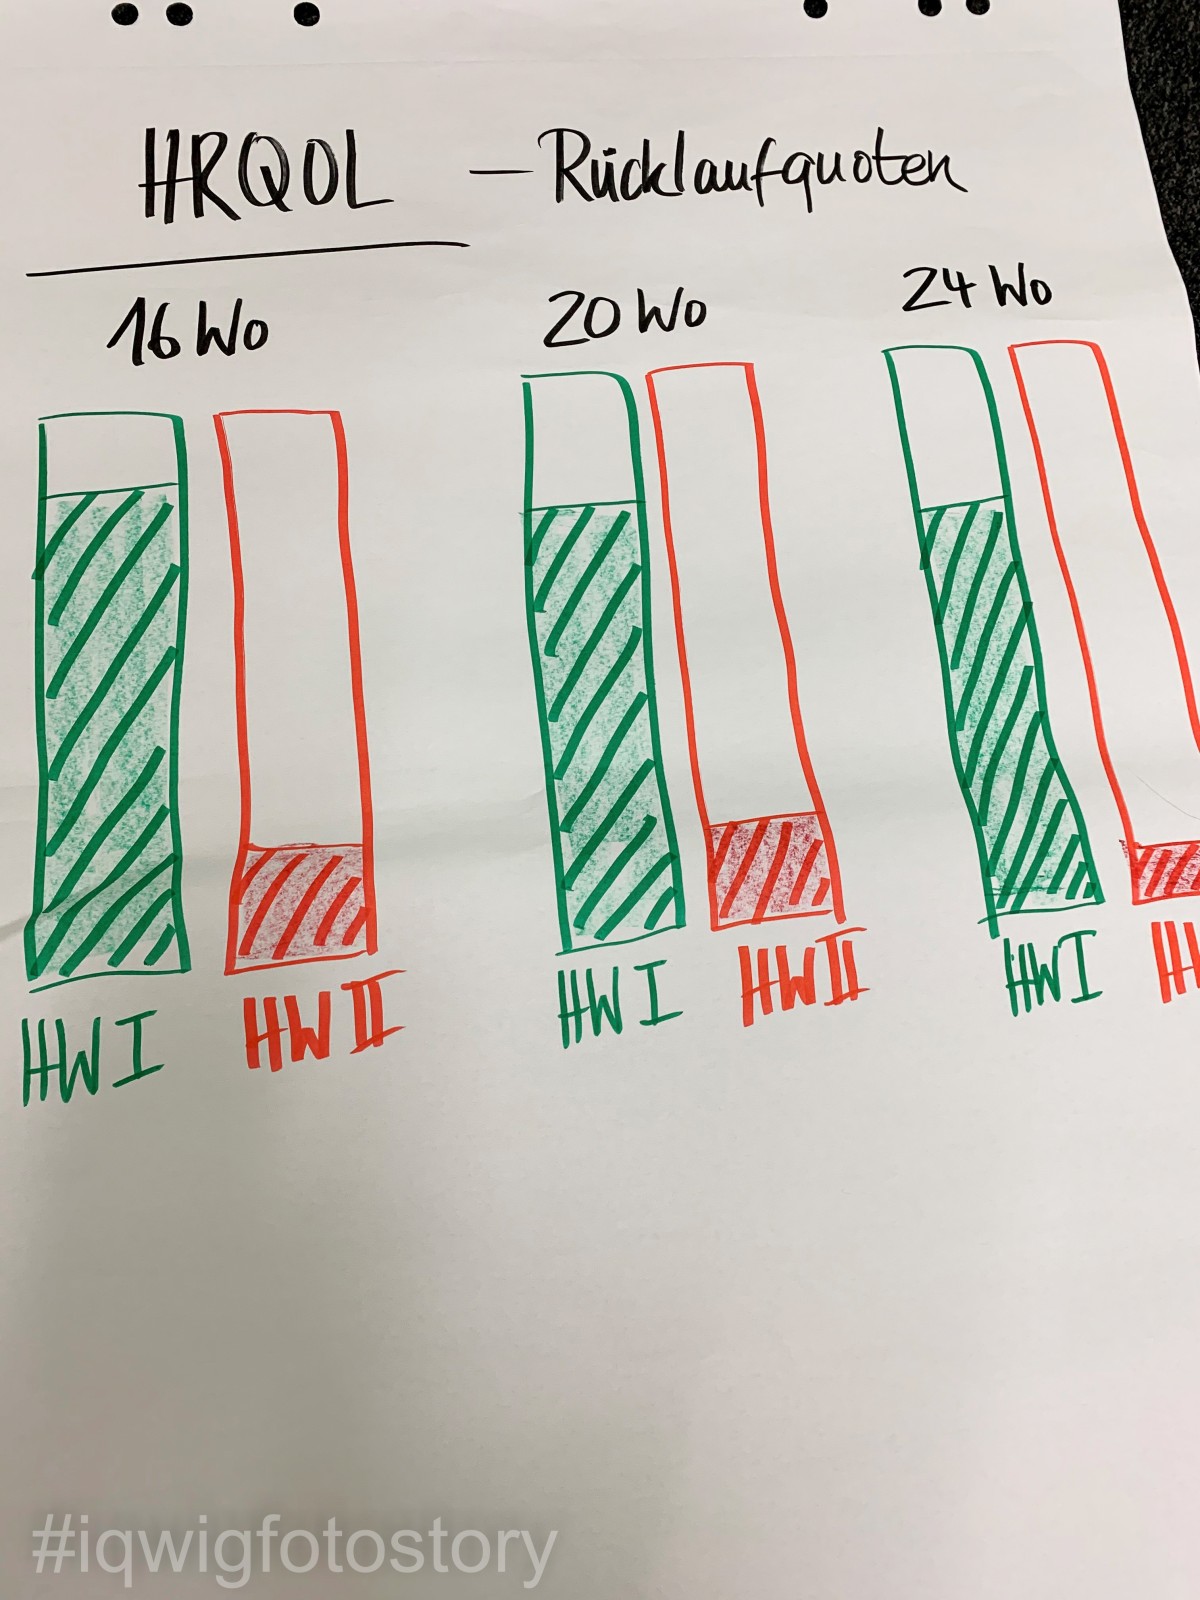 Flipchart-Bogen mit sechs grünen und roten Säulendiagrammen, die zeigen, dass die Rücklaufquoten der Befragungen zur Lebensqualität in einer der beiden Studien sehr niedrig sind.